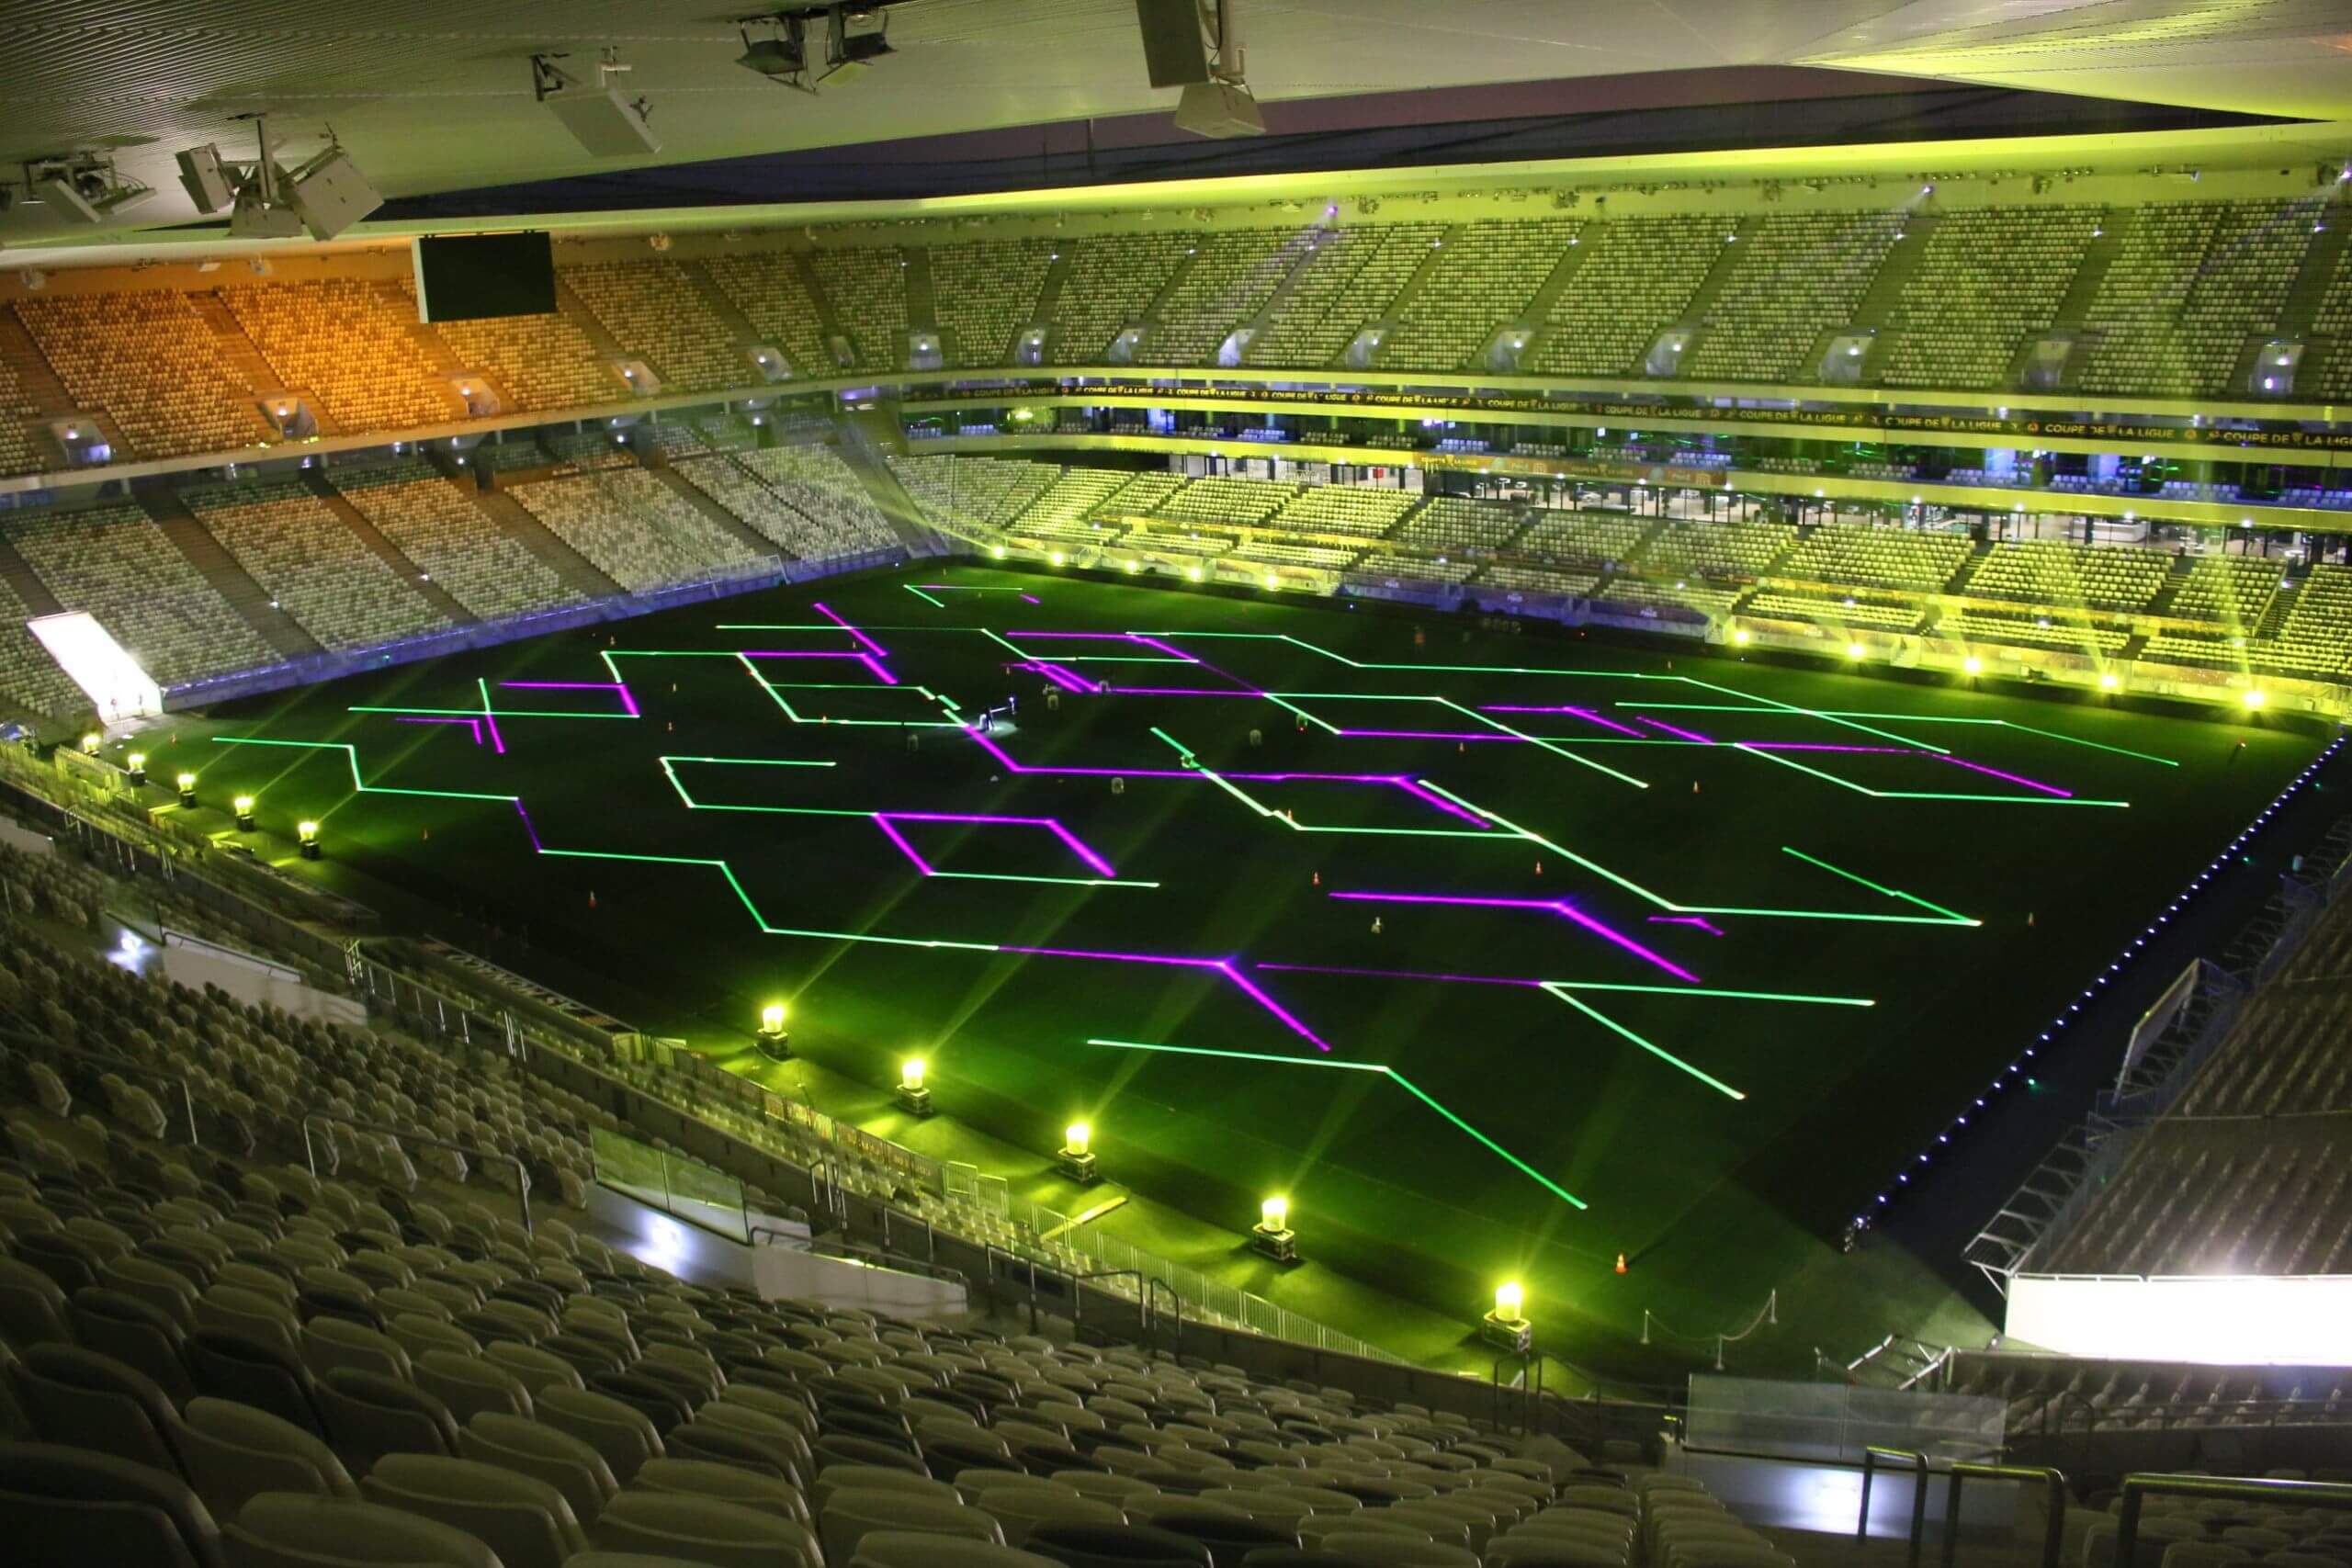 Europe Évènement - Photo d'un stade avec projections de formes géométriques vertes et violettes dessus lors de la finale de coupe de la ligue en 2018